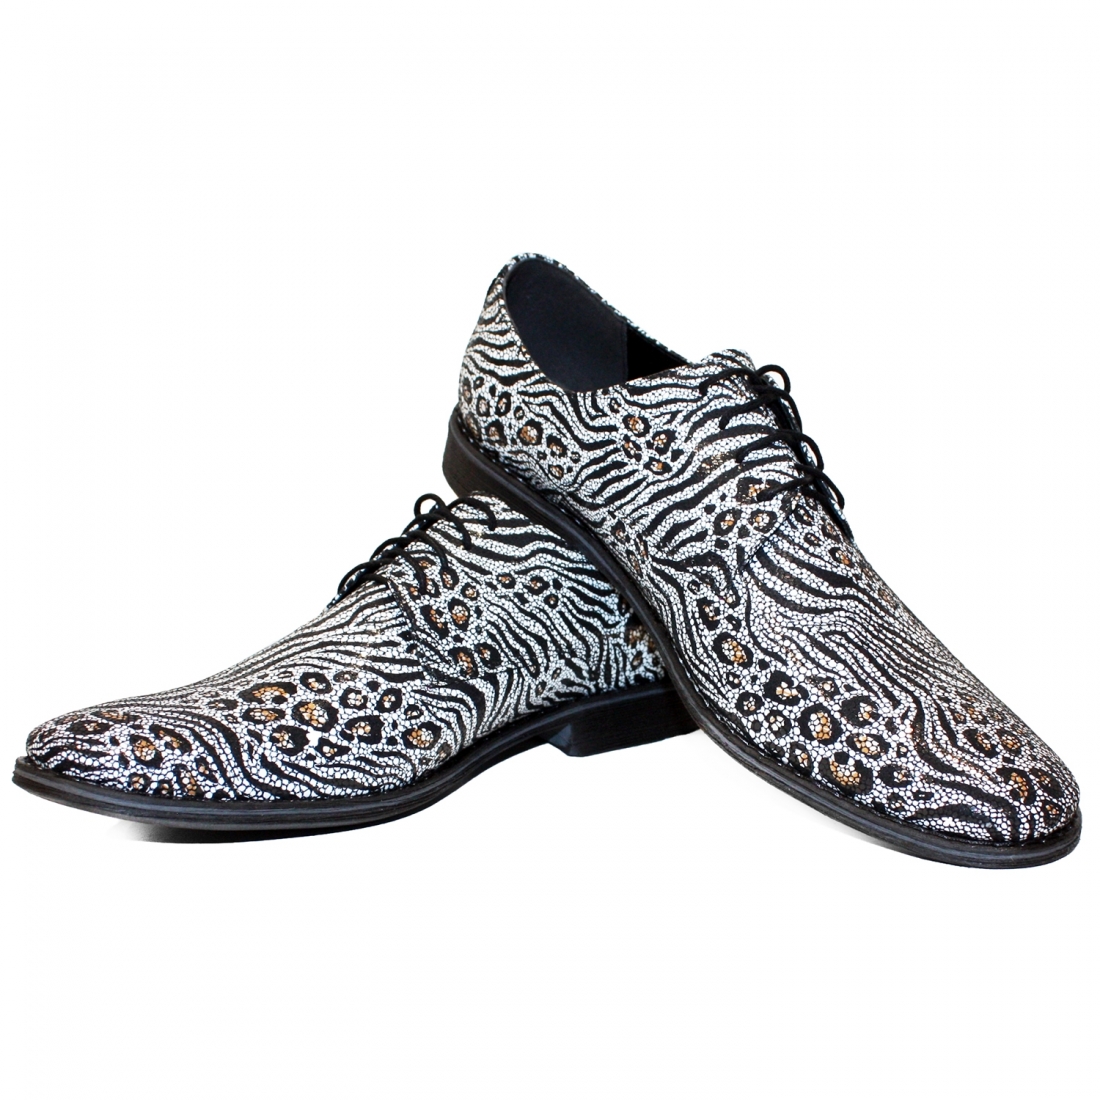 Modello Zeberro - Chaussure Classique - Handmade Colorful Italian Leather Shoes